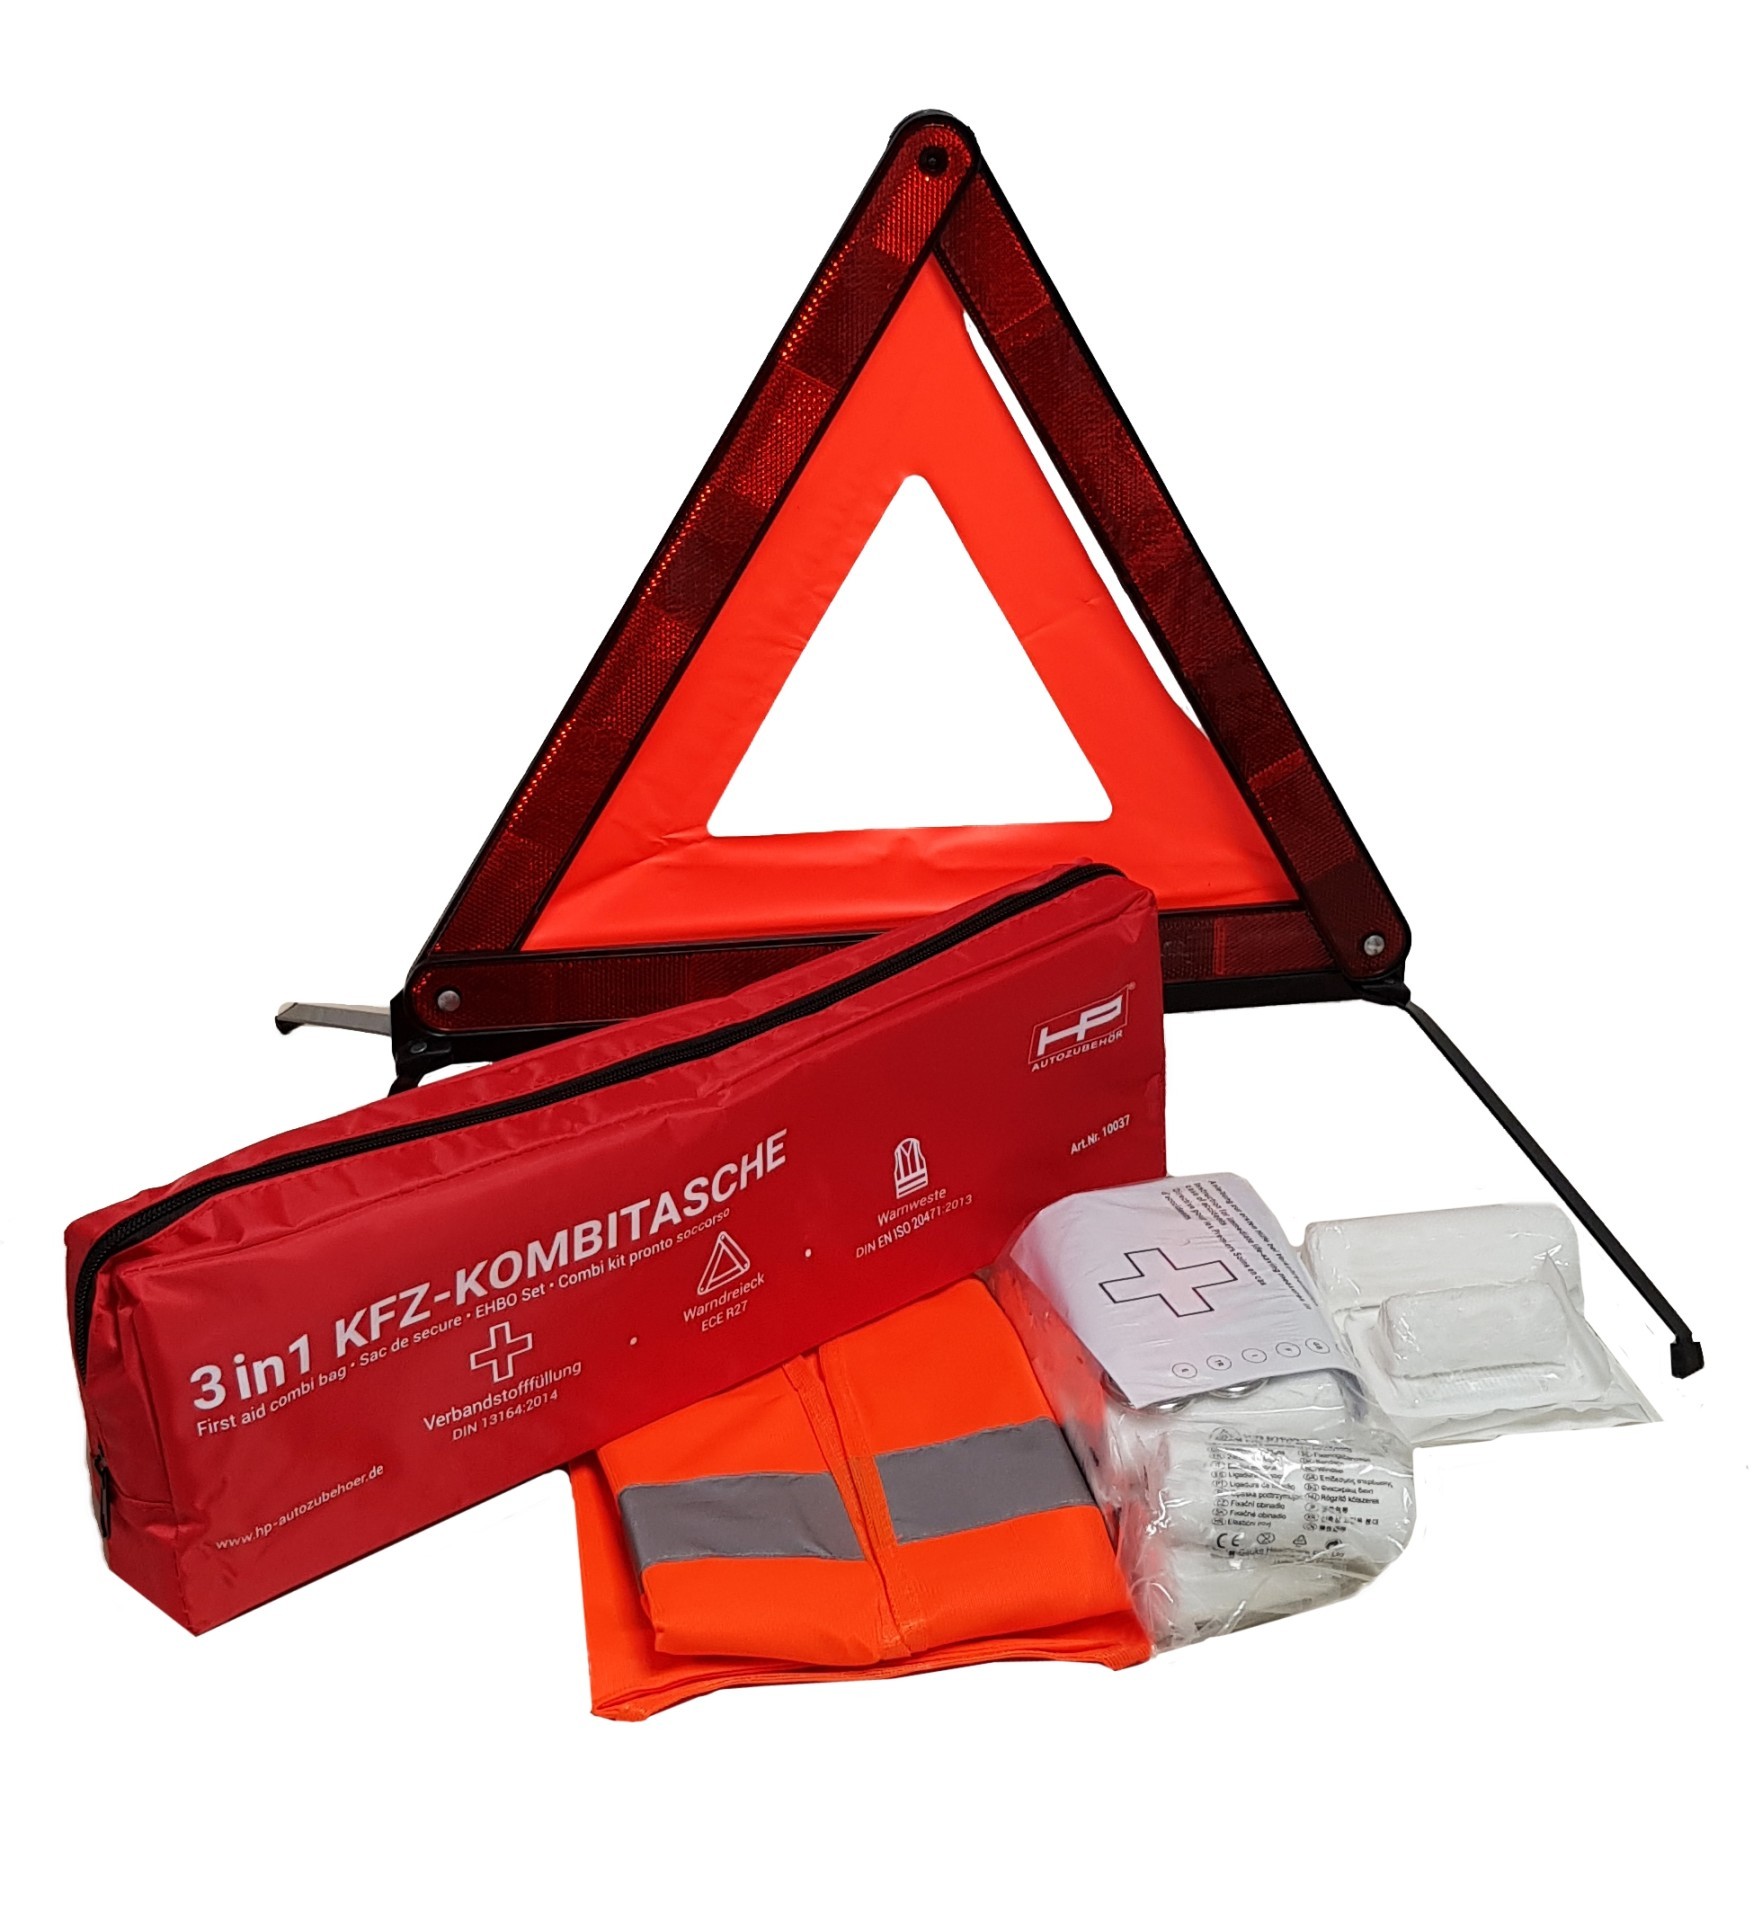 KFZ-Verbandkasten Inhalt nach DIN 13164 mit Rettungsdecke und Maske, Pannenhilfe, Autozubehör